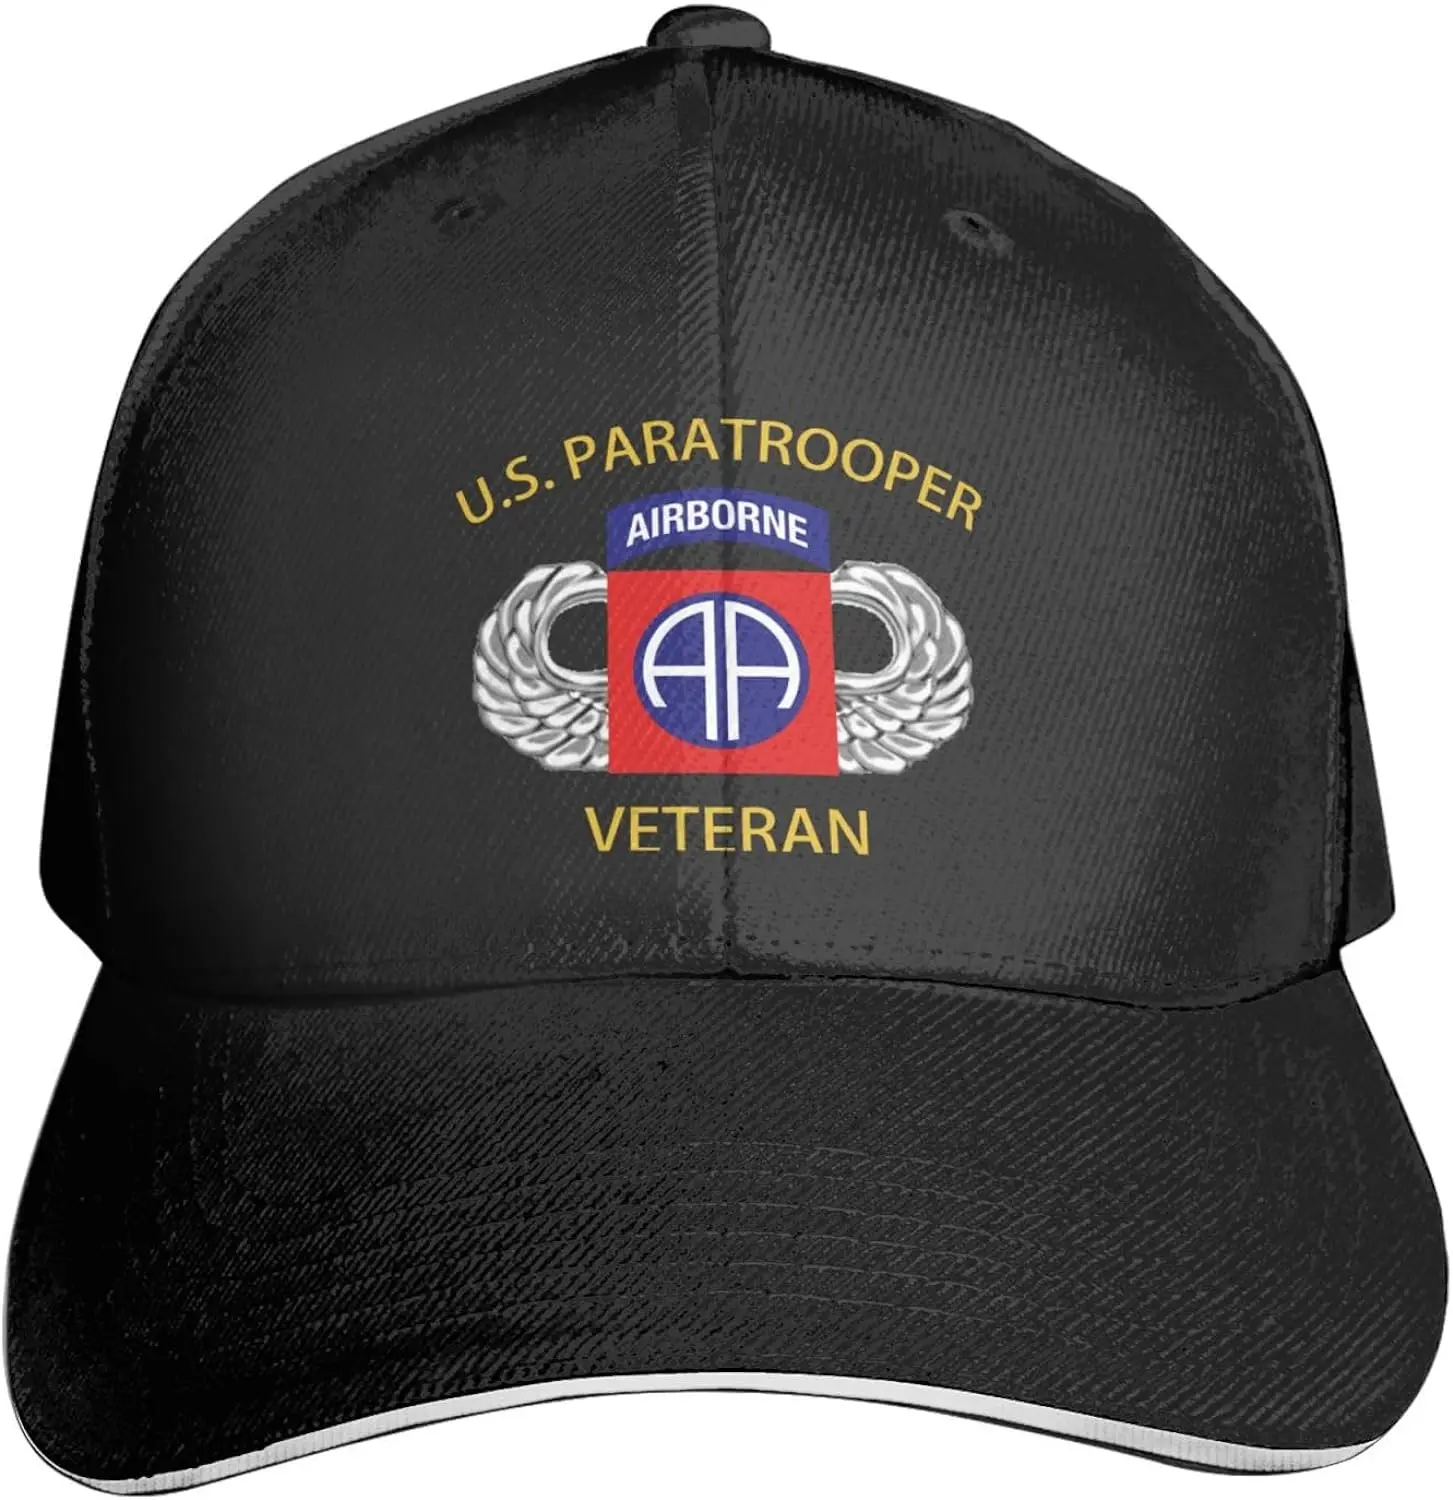 82-я воздушно-десантная дивизия США, ветеран армии десантников, бейсбольная кепка премиум-класса с регулируемой яркостью для мужчин и женщин - Спорт на открытом воздухе